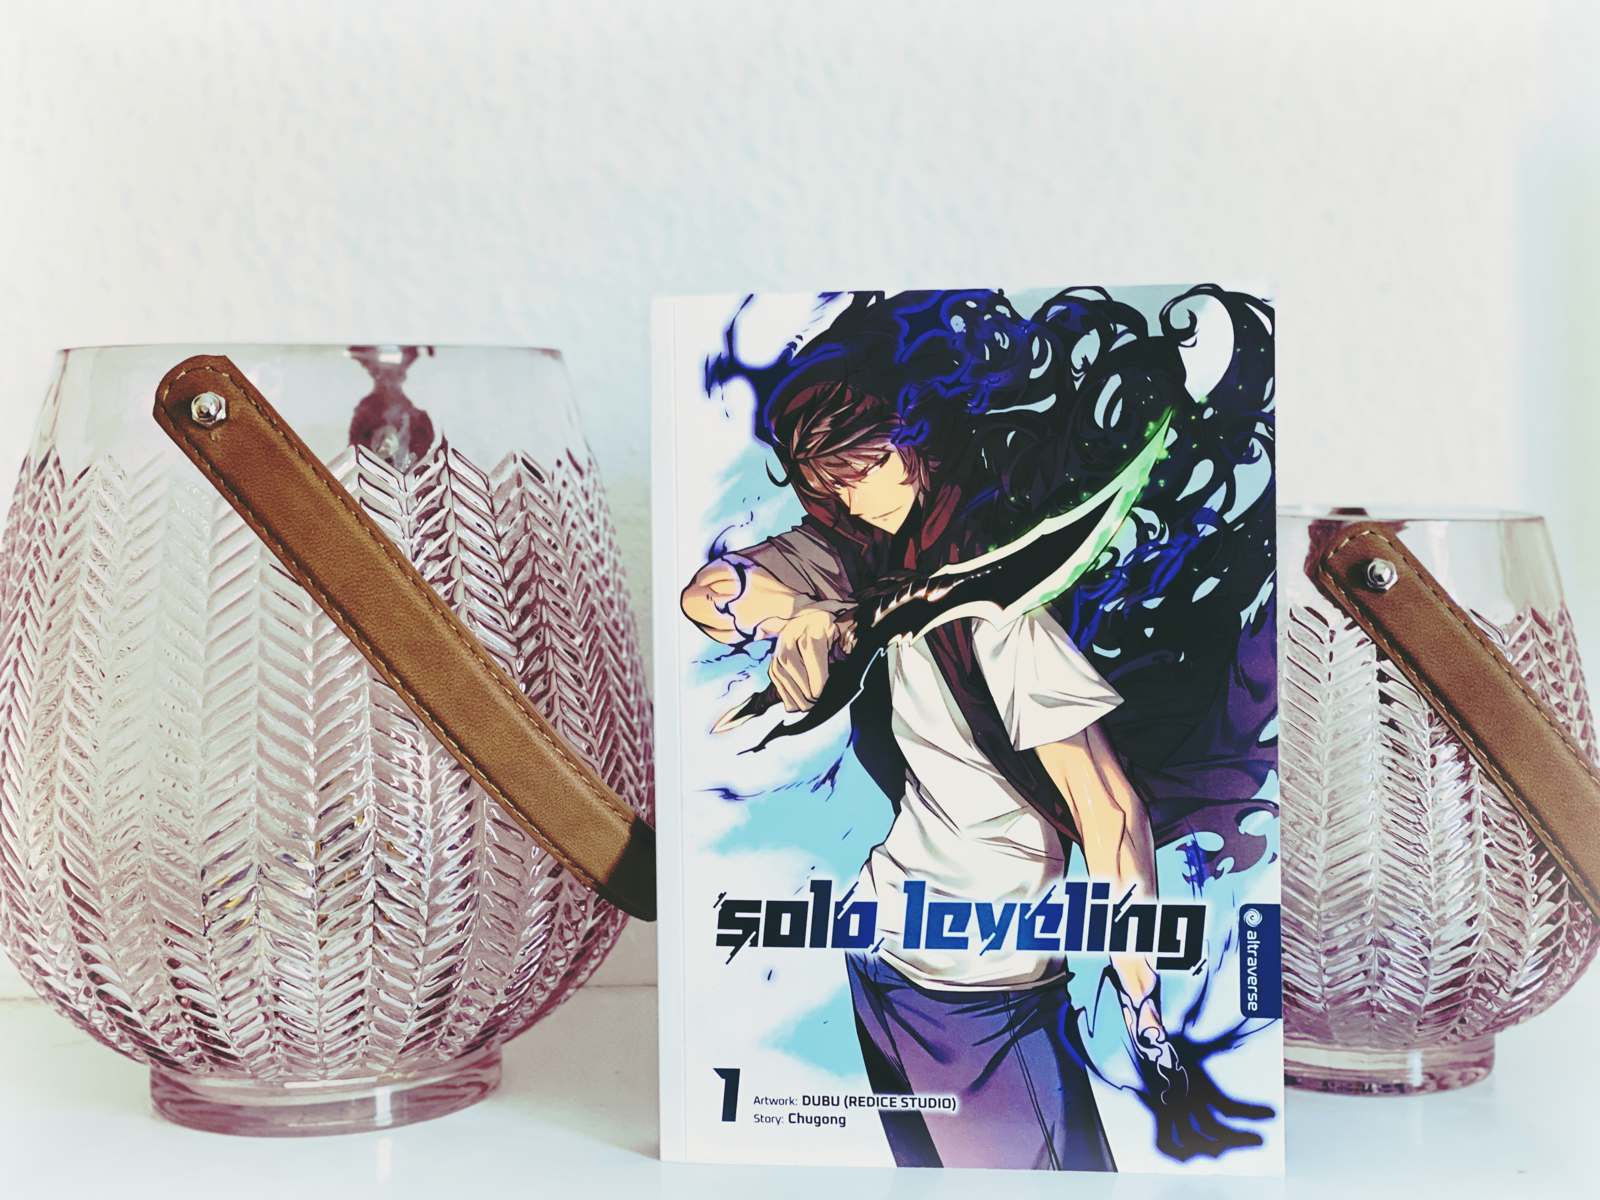 Manga] Solo Leveling [2] - Vincisblog